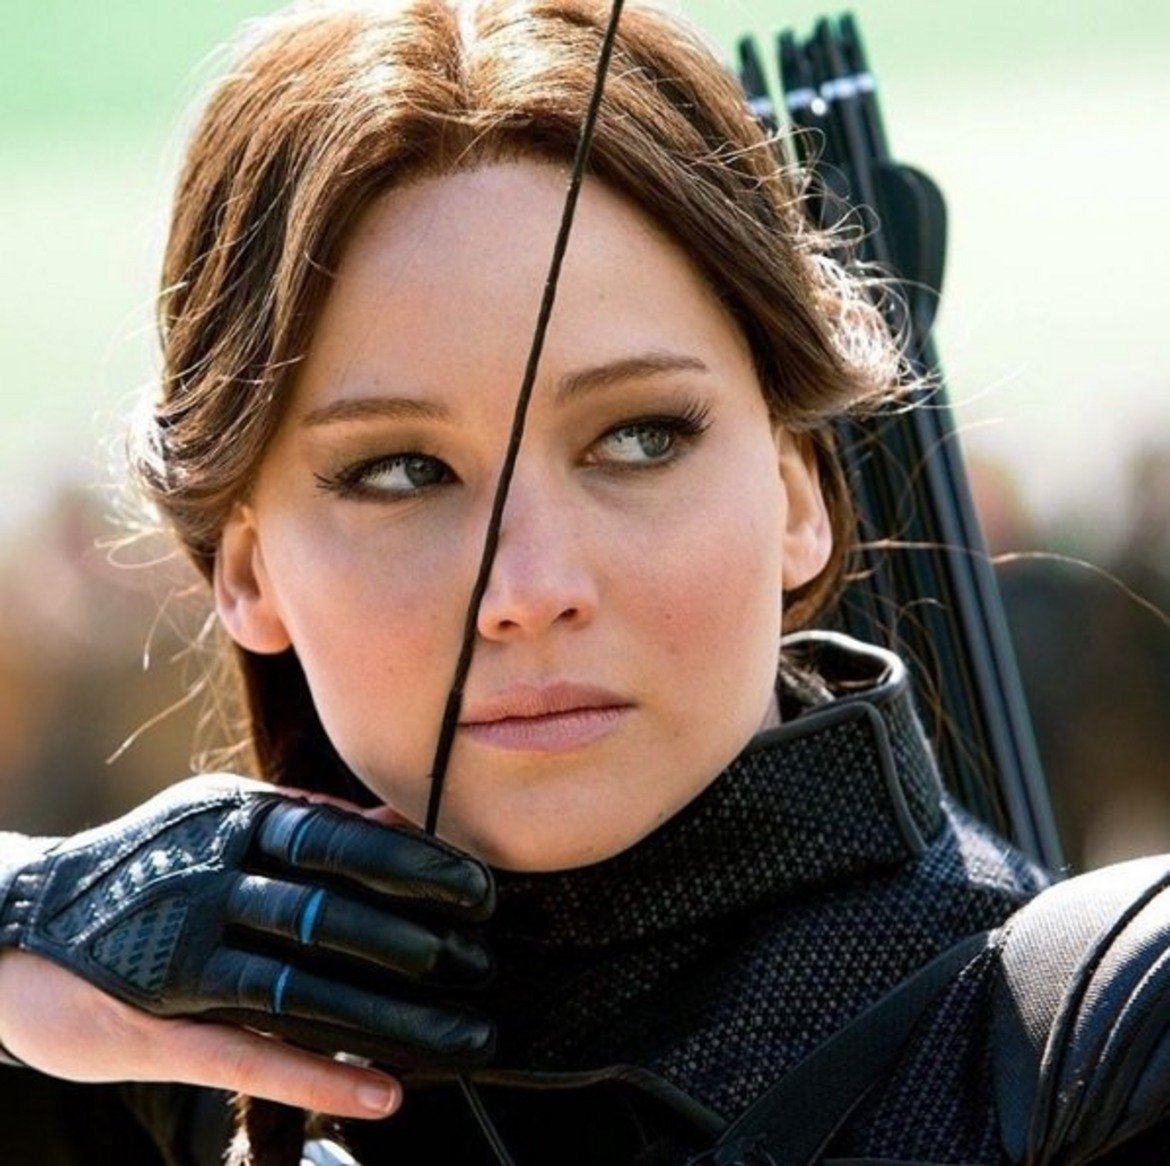  The Hunger Games: Mockingjay 2 

Чакай малко, не споменахме ли вече "Игрите на глада"? Да, Дженифър се прочу с първата част на поредицата, но последната е далеч по-драматична, сложна, заплетена и изисква много повече актьорски талант, за да изглежда убедителна. Това е кулминацията на жестоката борба – както с тиранията, така и в личностен план. 

Във "Възпламеняване" и първата от двете екранизации по "Сойка присмехулка" действието изглеждаше малко претупано, но тук Лорънс показва пълния си потенциал. Обърканата тийнейджърка вече я няма, на нейно място е безпощаден и пресметлив боец. Сцените на насилие се редуват с такива, които показват вътрешните противоречия, които тормозят Катнис Евърдийн. По тази причина Mockingjay 2 и участието на Дженифър си заслужават отделно внимание.